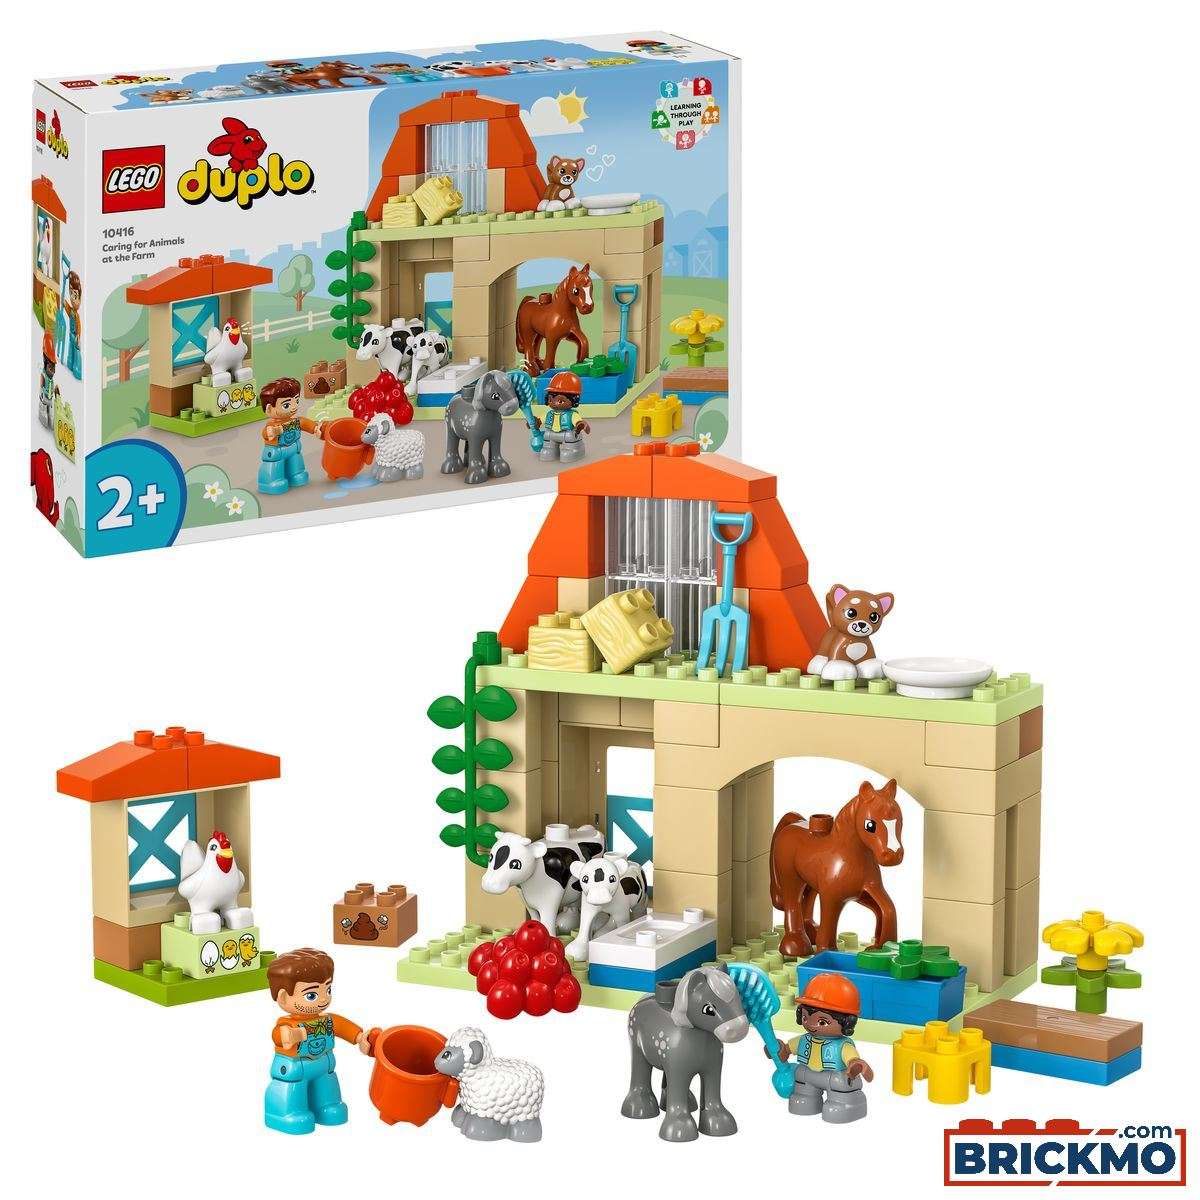 LEGO Duplo 10416 Tierpflege auf dem Bauernhof 10416